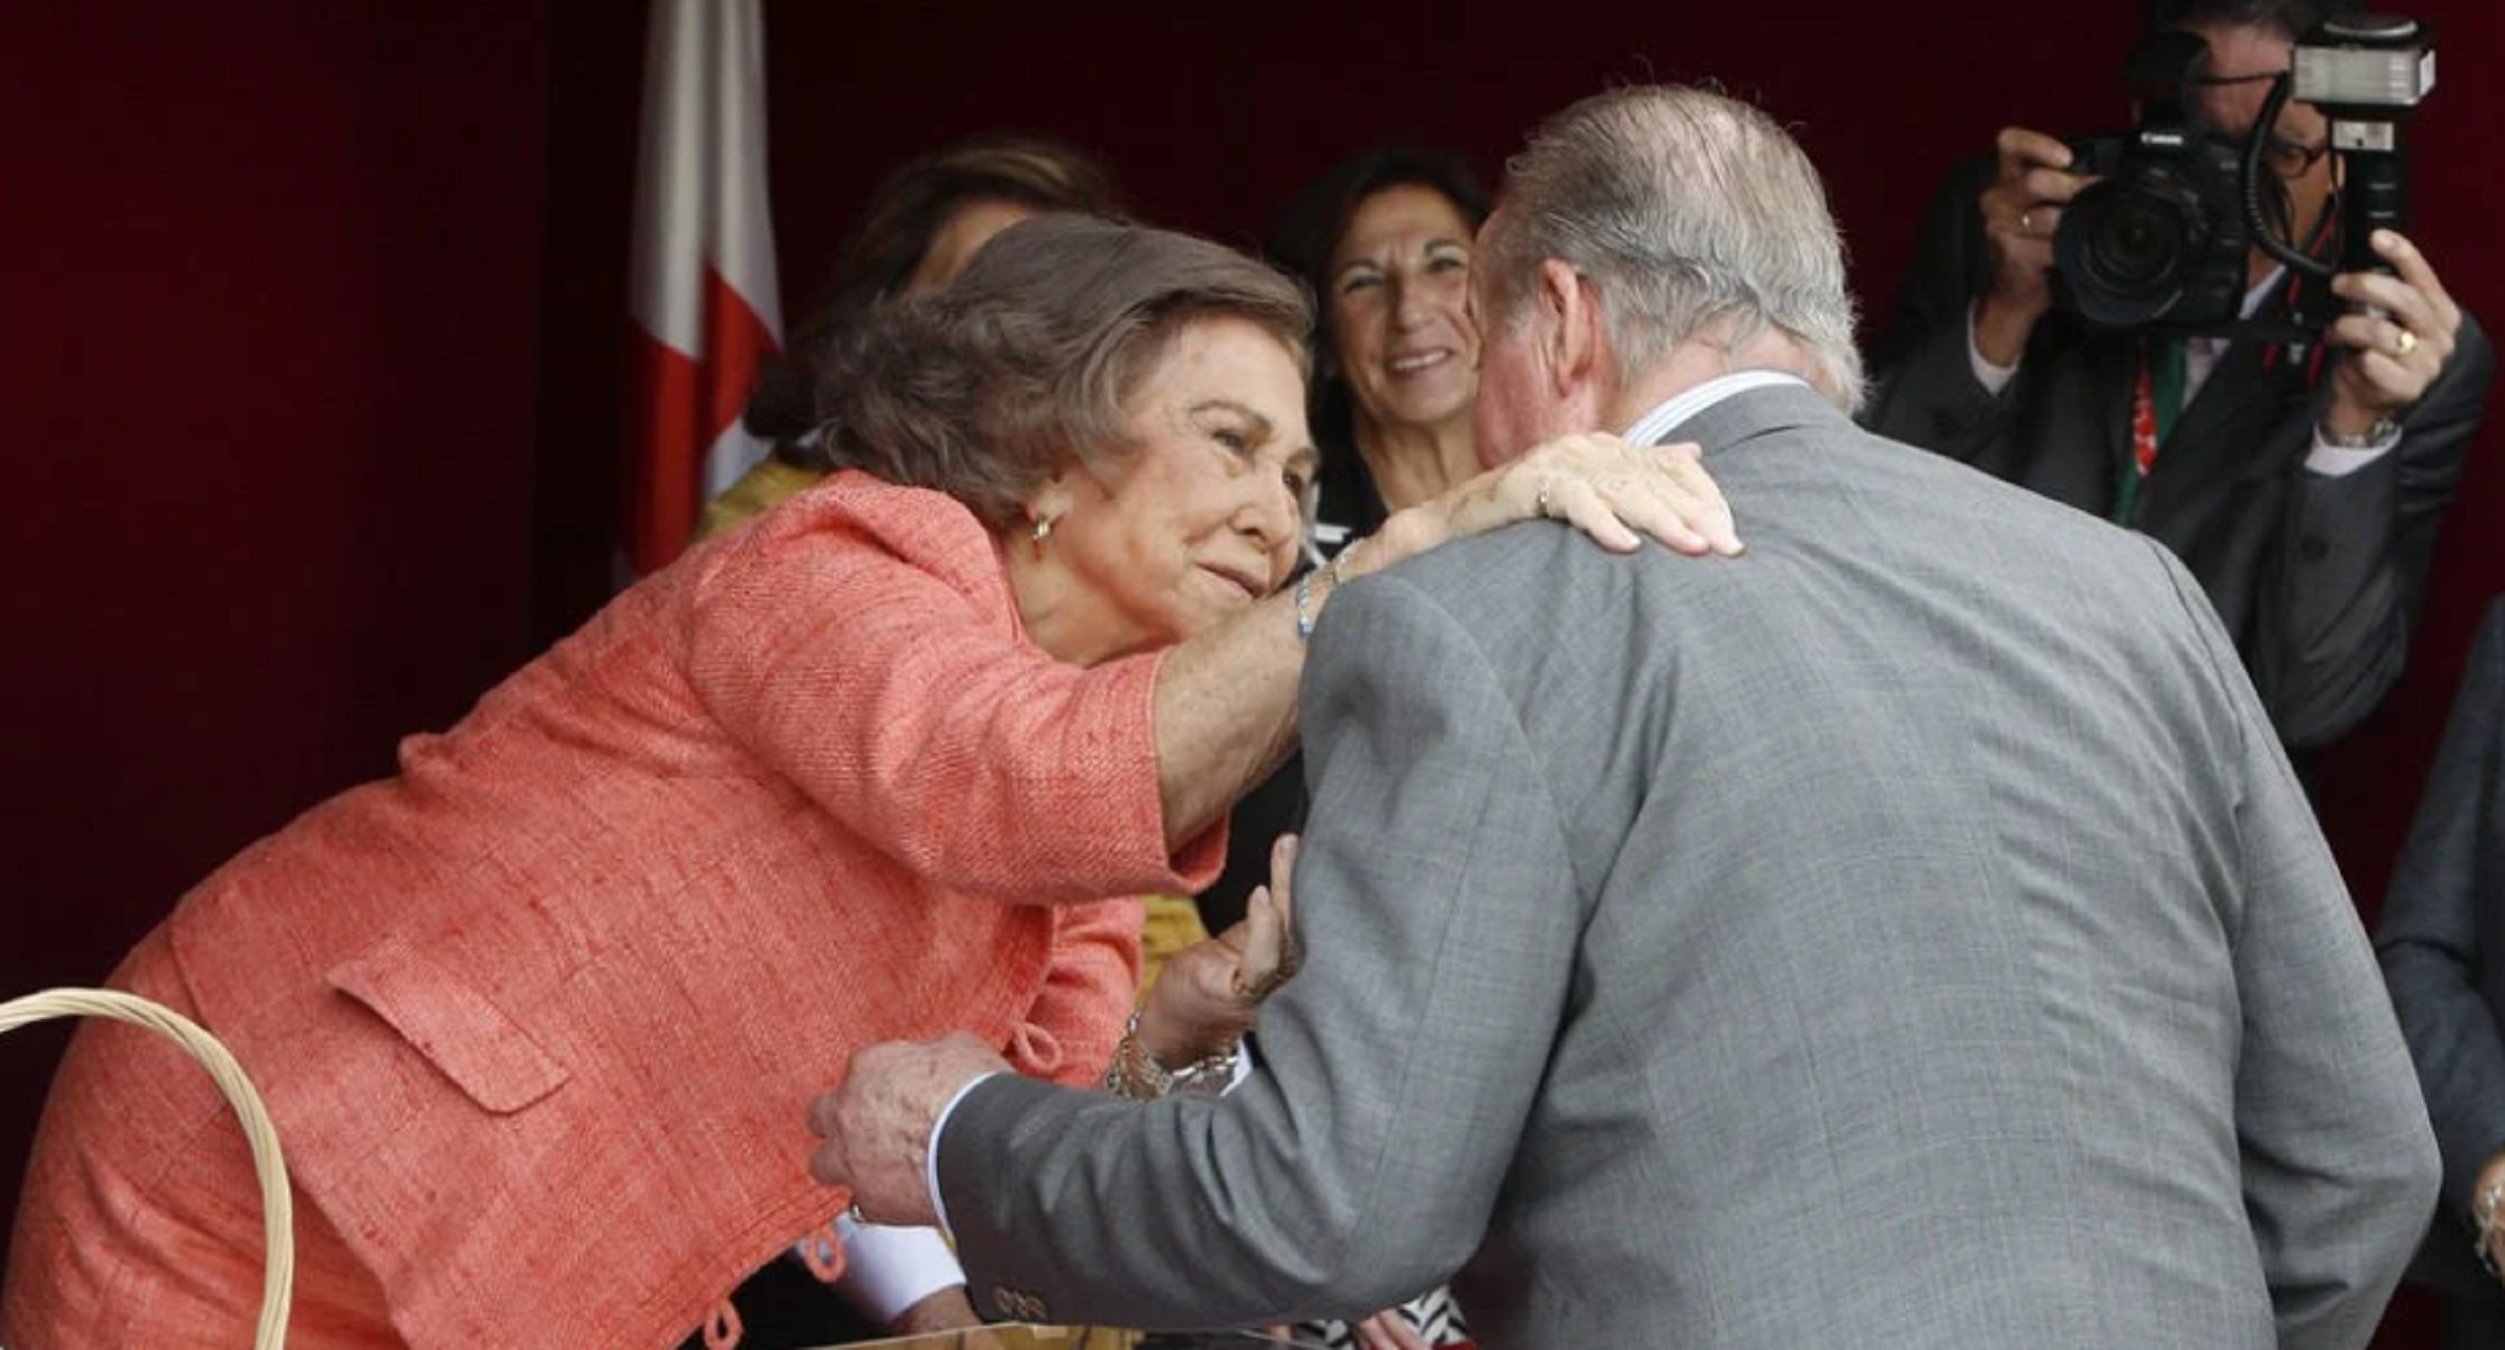 Encuentro en Asia: la reina Sofía se cita con Juan Carlos I 1.032 días después en "su continente"